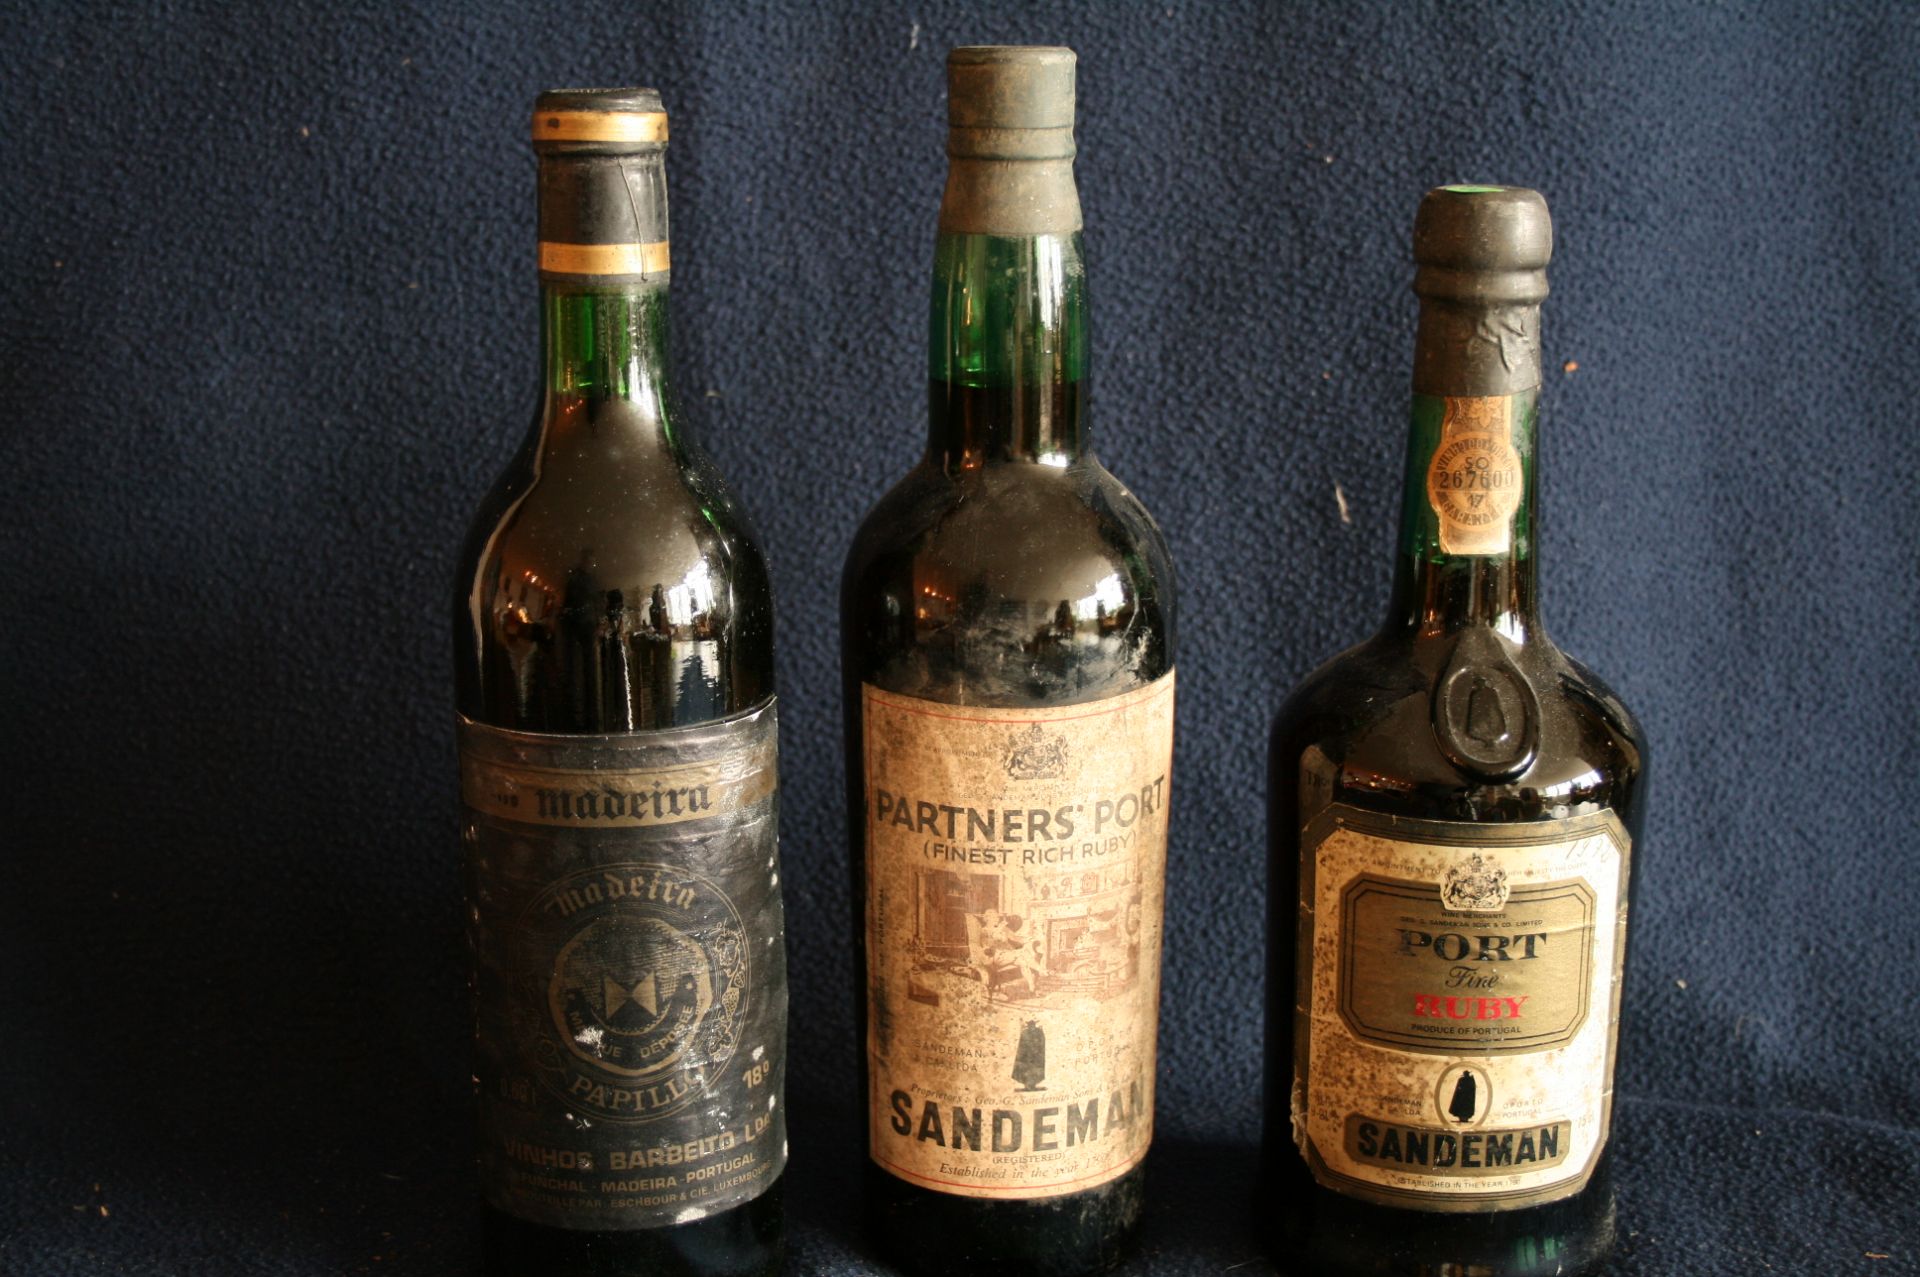 1 bouteille de PORTO Fine RUBY, Sandeman, 1972 + 1 bouteille de PORTO Finest Rich [...]